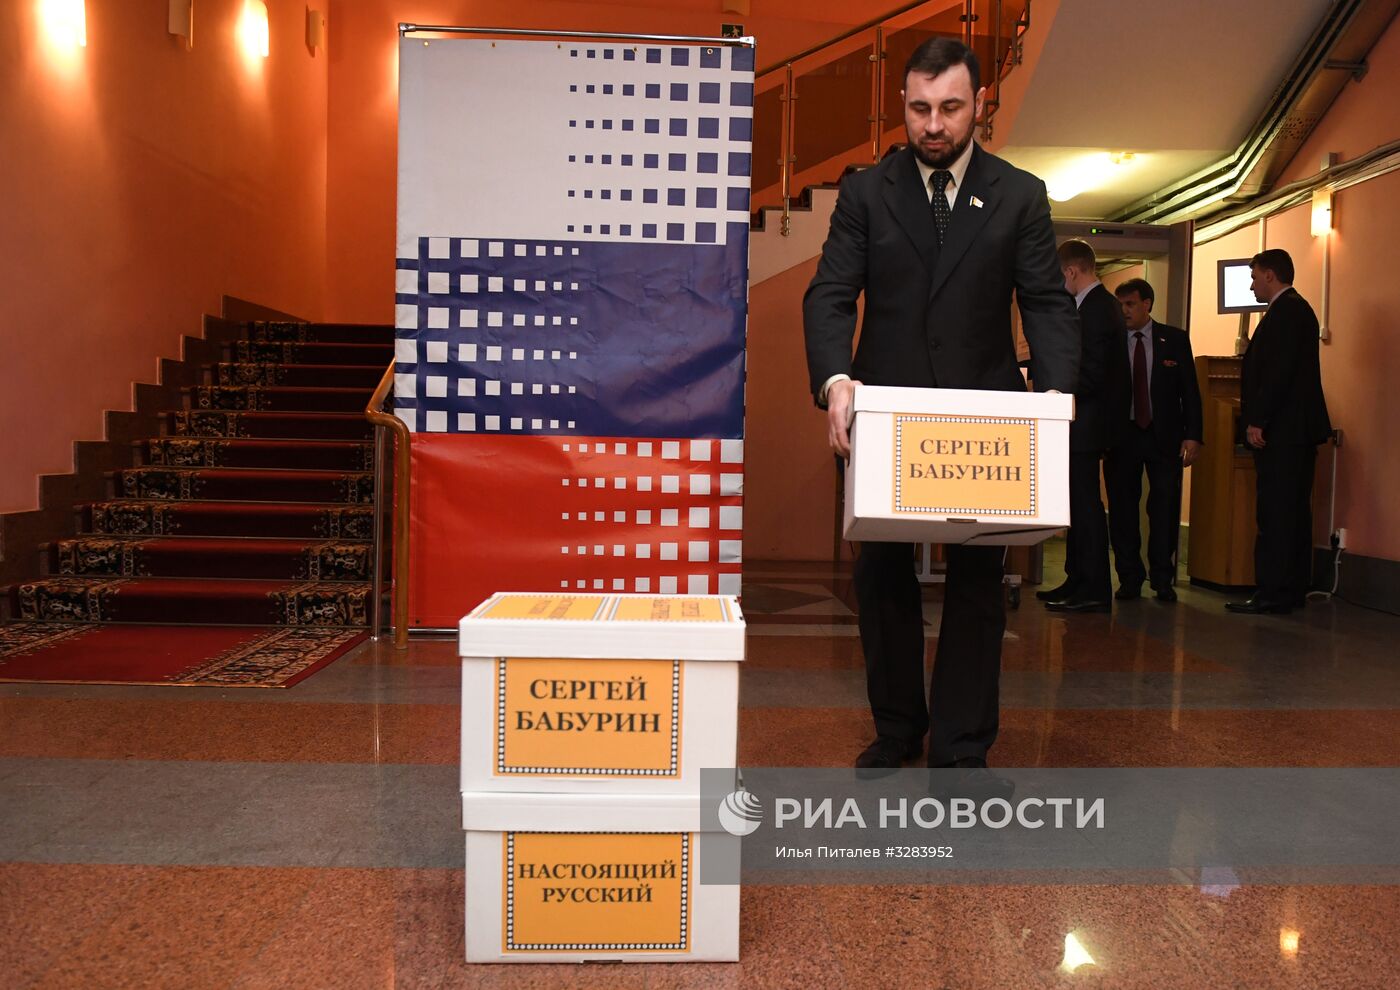 Передача подписей в поддержку регистрации С. Бабурина на выборах президента РФ